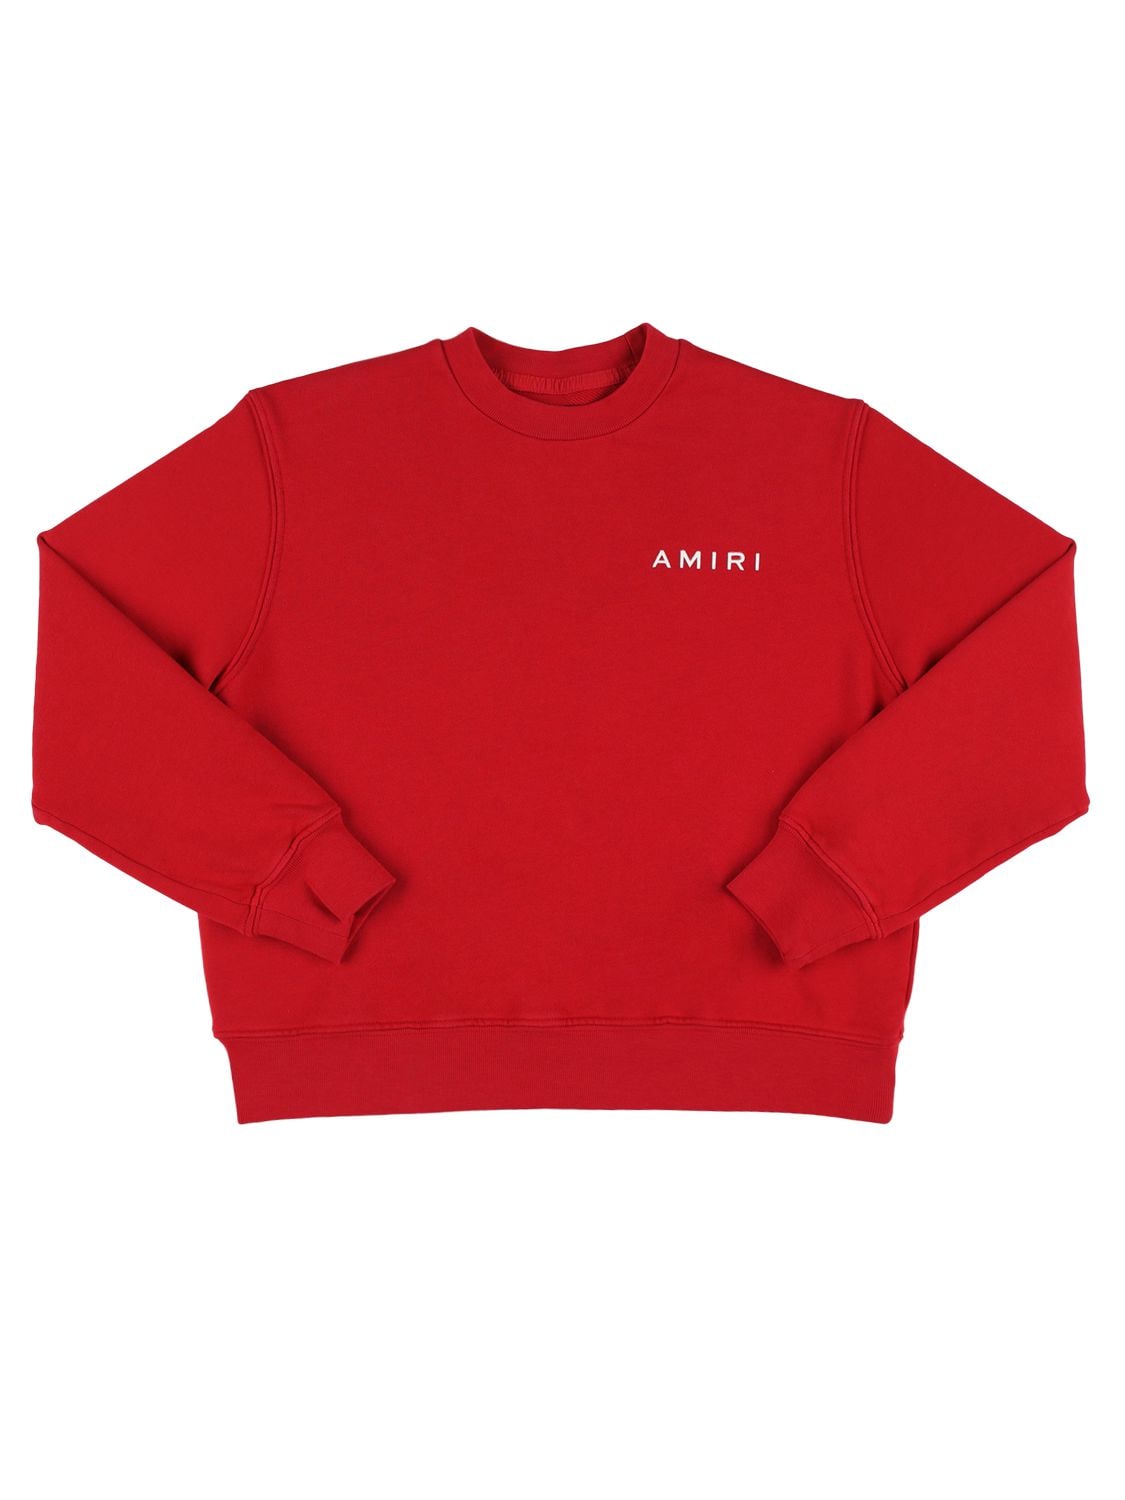 Amiri Kids' Cotton Crewneck Sweatshirt W/ Logo In Red